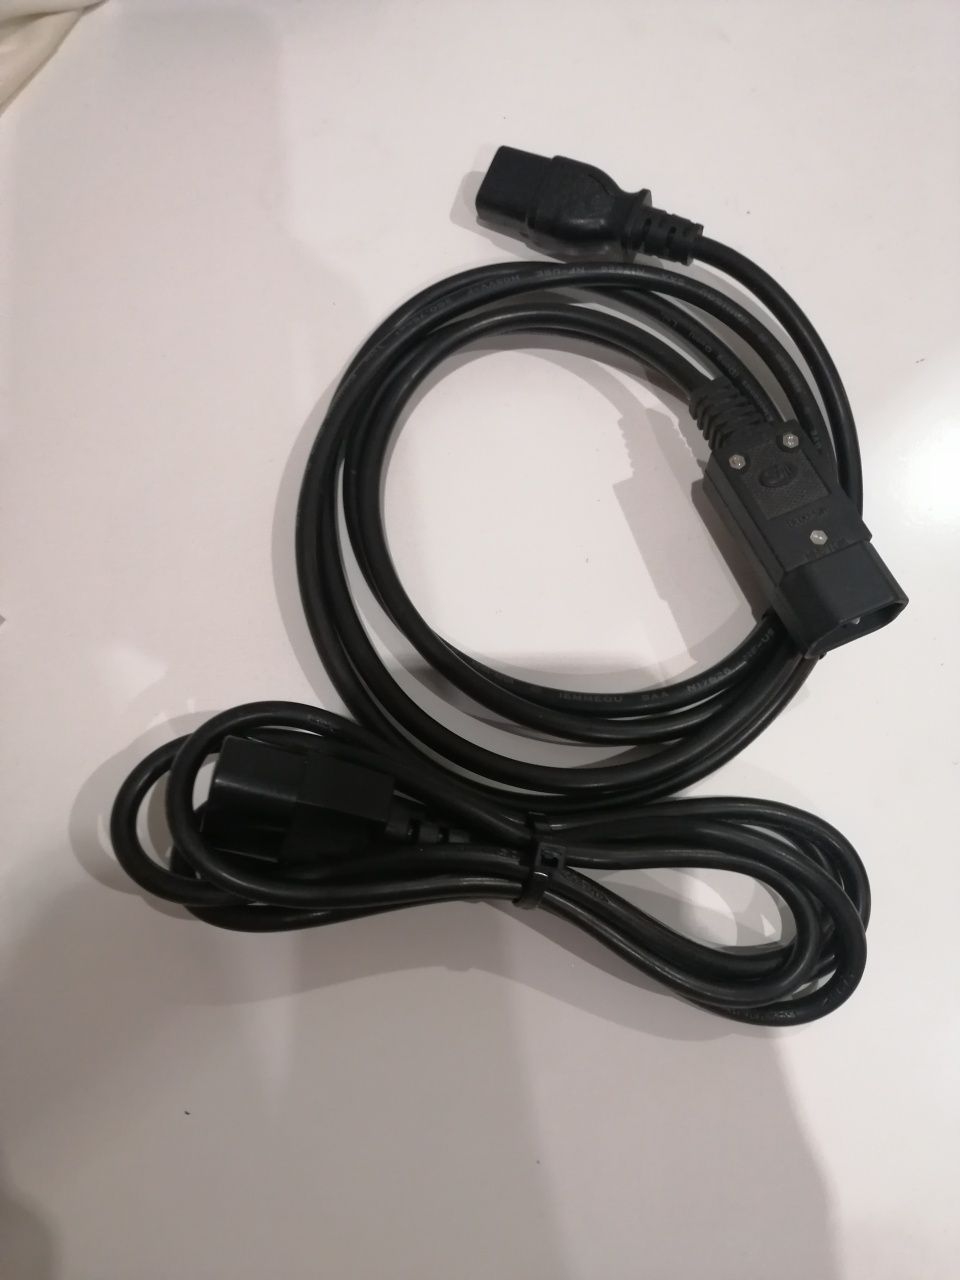 NOWY Kabel zasilający - przedłużacz komputerowy C13/C14  KEMA-KEUR